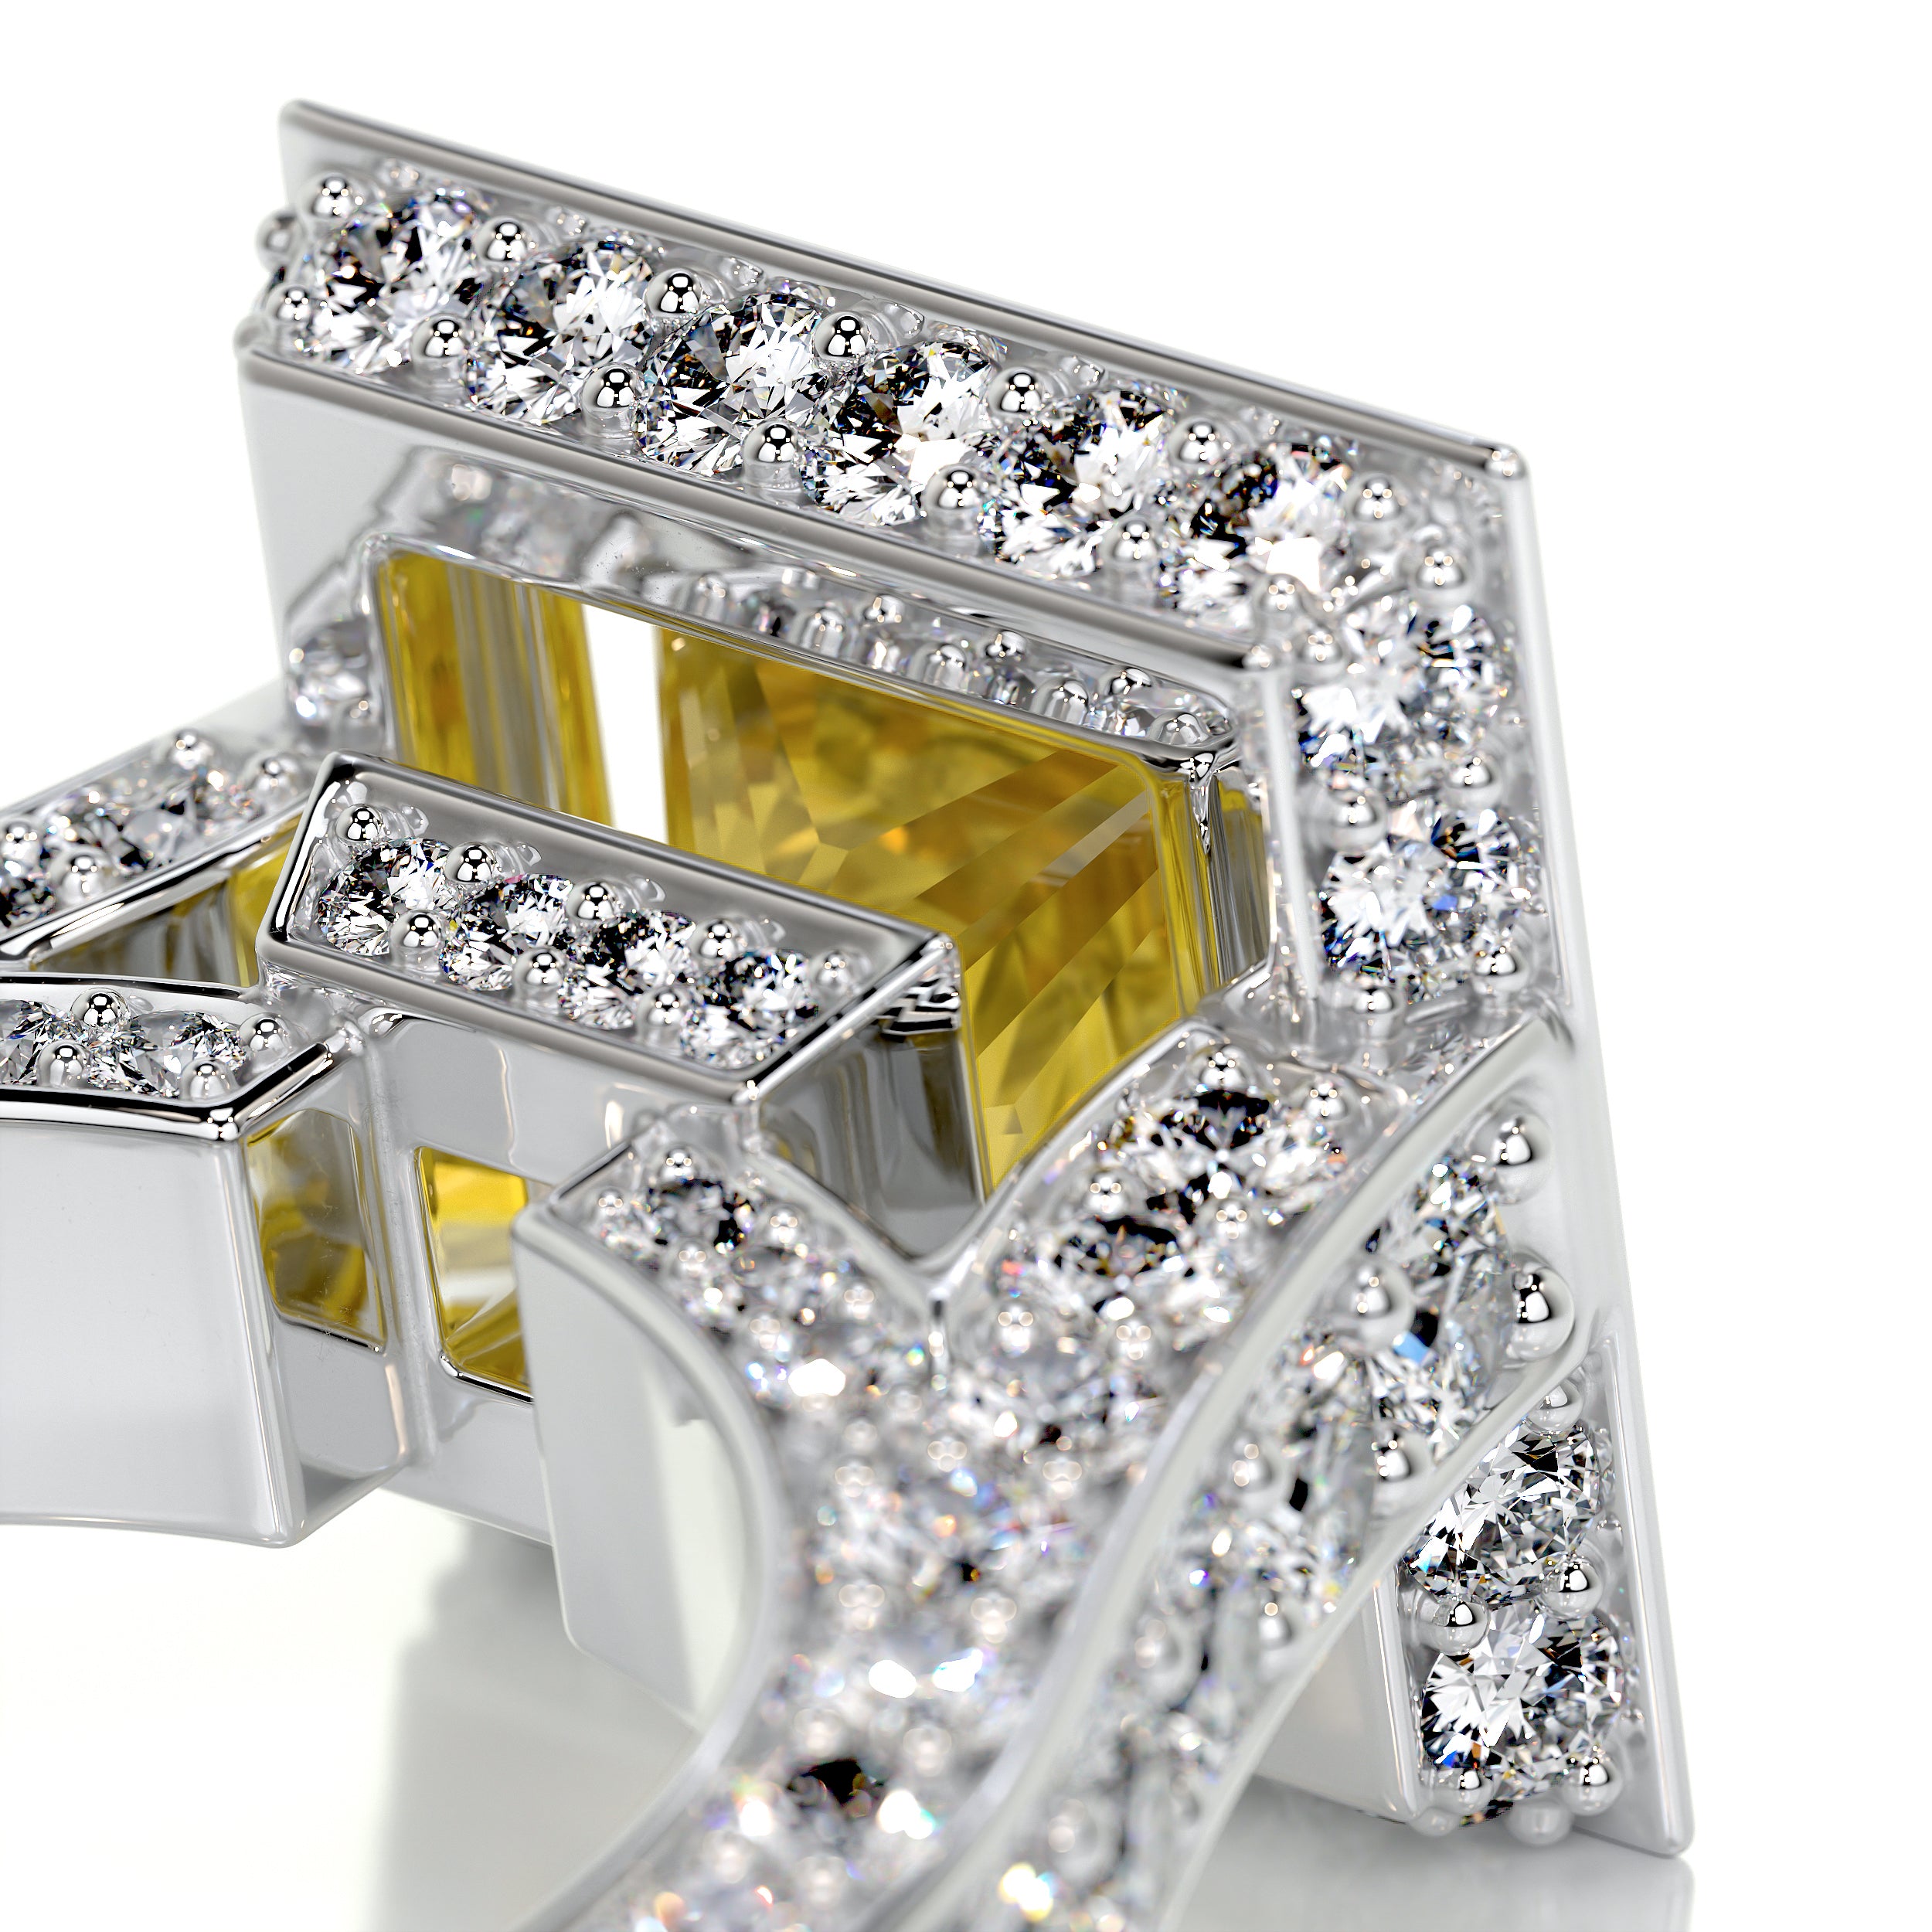 Freya Diamond Engagement Ring -14K White Gold